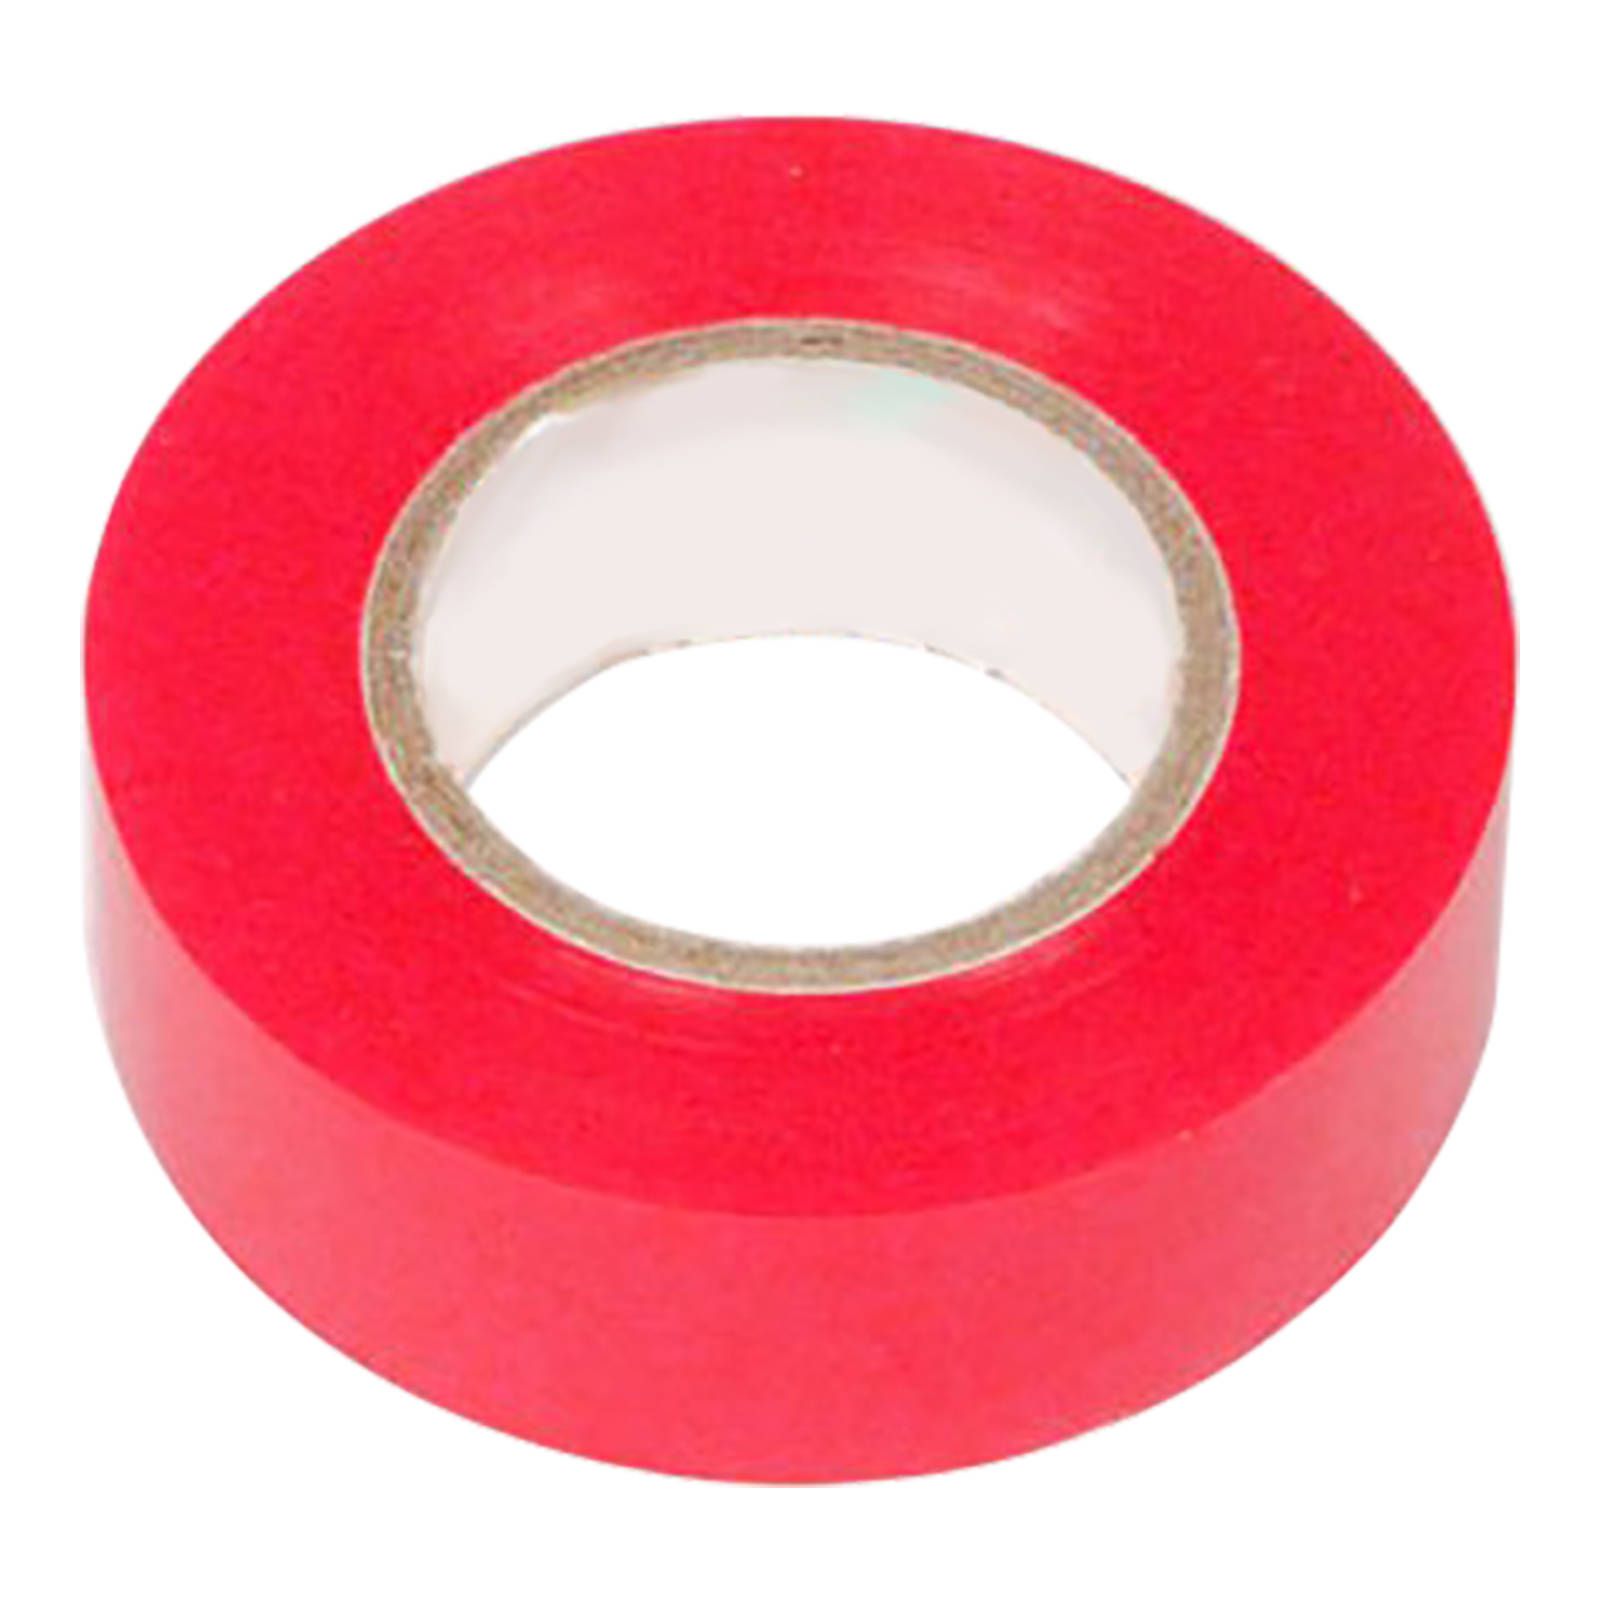 New WHITES Tape PVC 18mm X 6.5Mtr Red Each - Steel Grip #TAPEPVCSGR